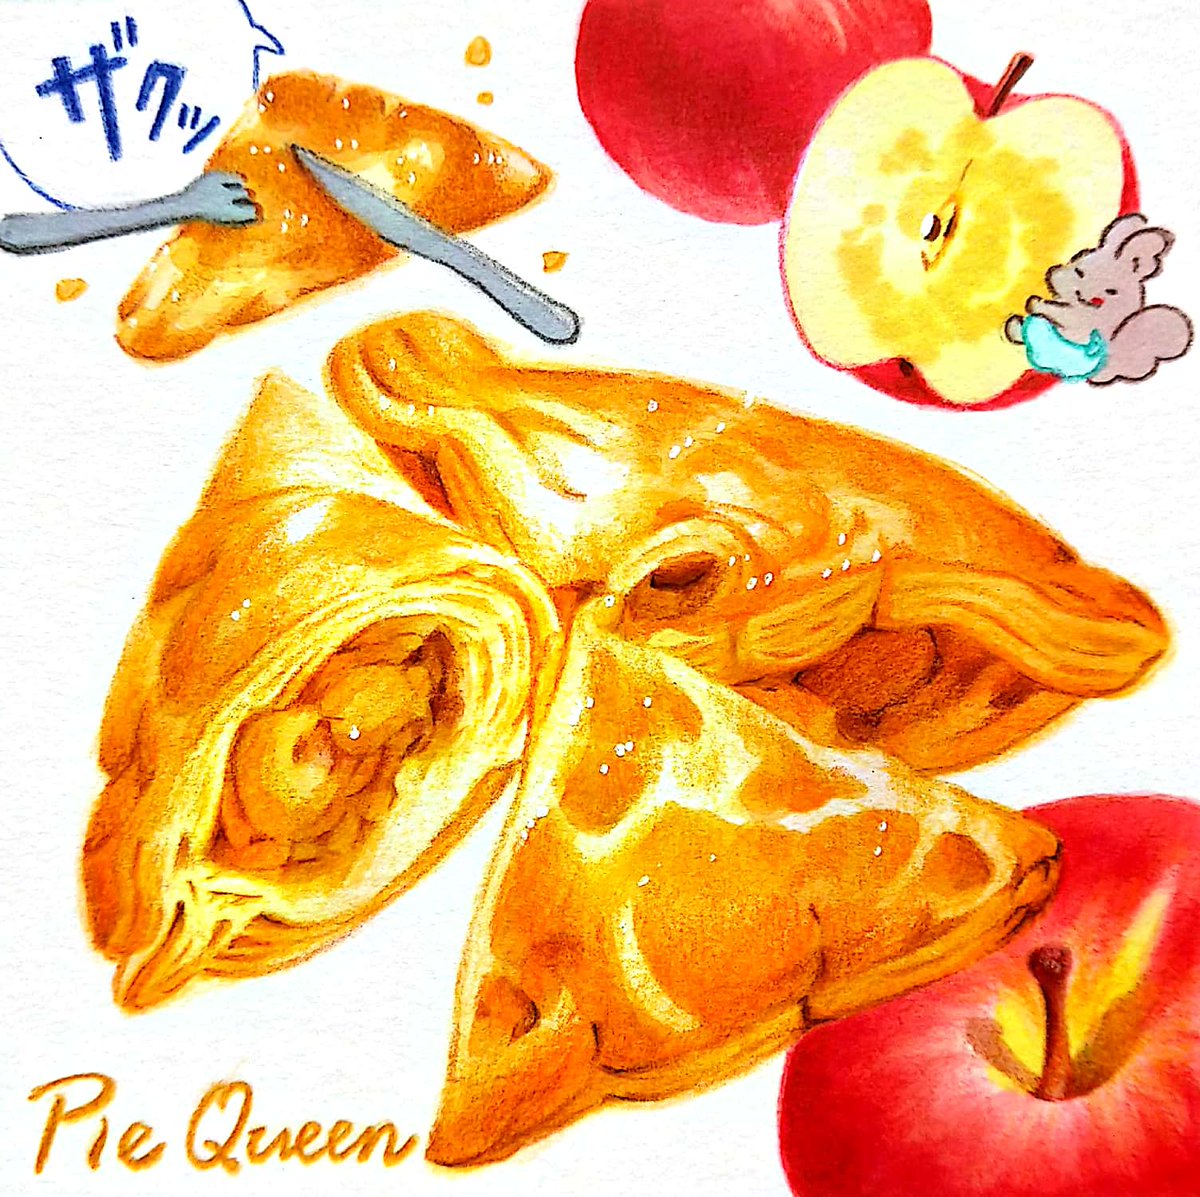 肌寒くなると食べたくなる熱々のアップルパイ。札幌のアップルパイ専門店「パイクイーン」さん。「かぐらじゅ」の姉妹店。ザクッとパイ生地の中にジュワッとジューシーな煮林檎。甘さ控えめなので食べる人を選ばず贈り物に良さそう。
#田島ハルのくいしん簿 